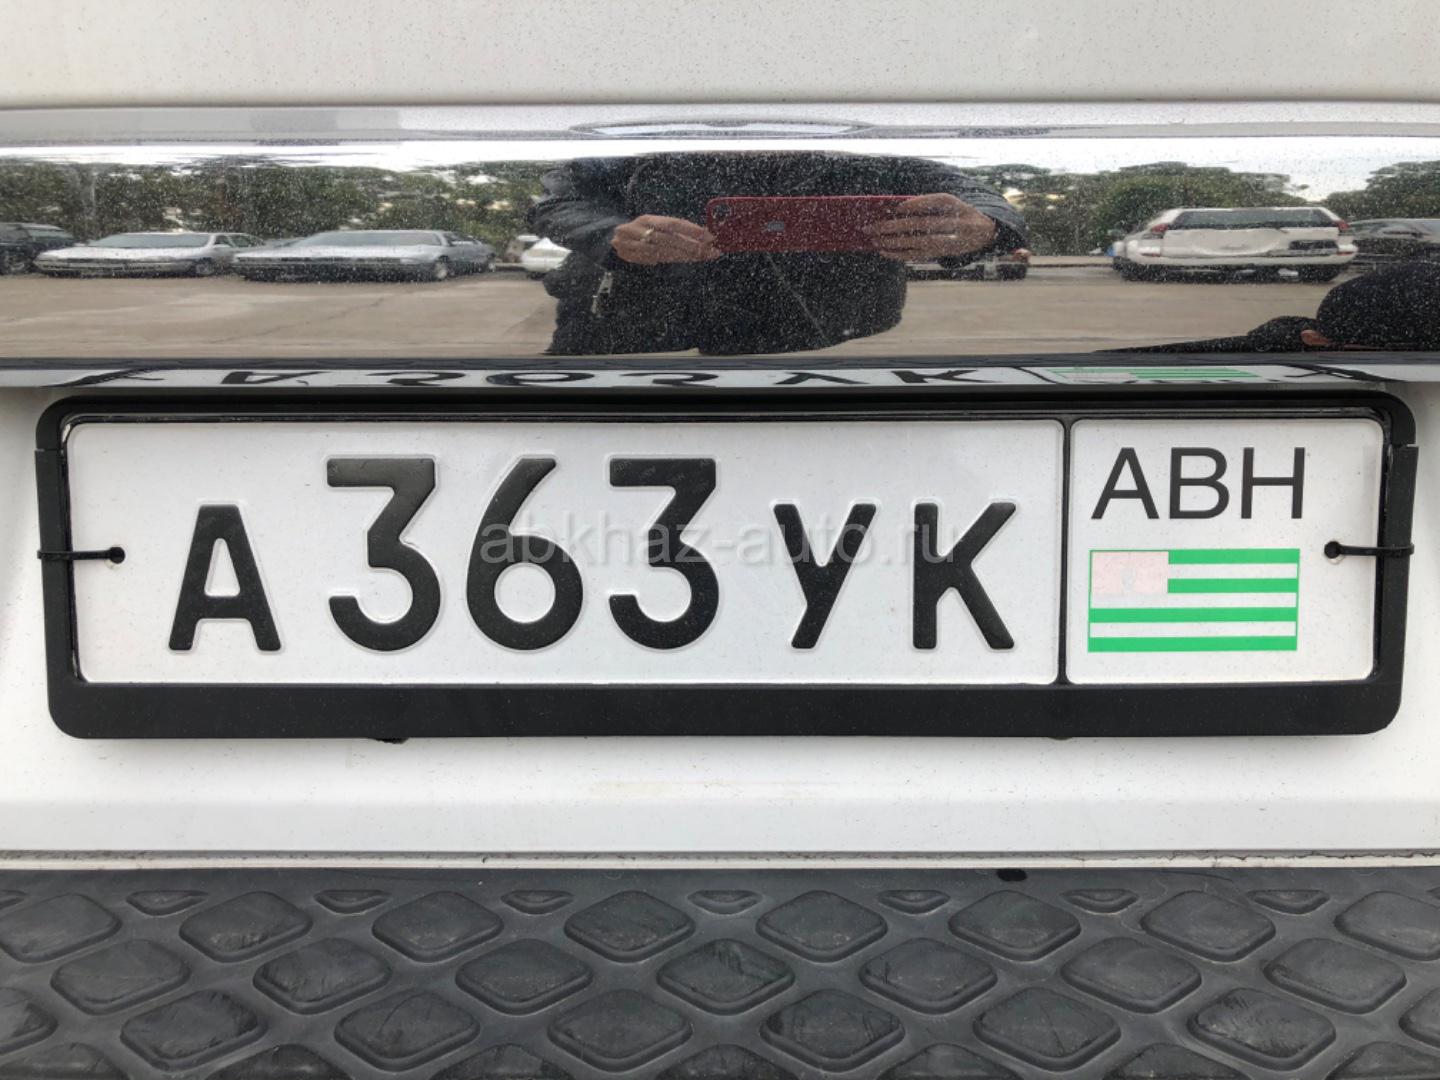 Как ездить на абхазских номерах. Номера Абхазии автомобильные. Гос номера Абхазии. Номерной знак Абхазии. Абхазия гос номера машины.